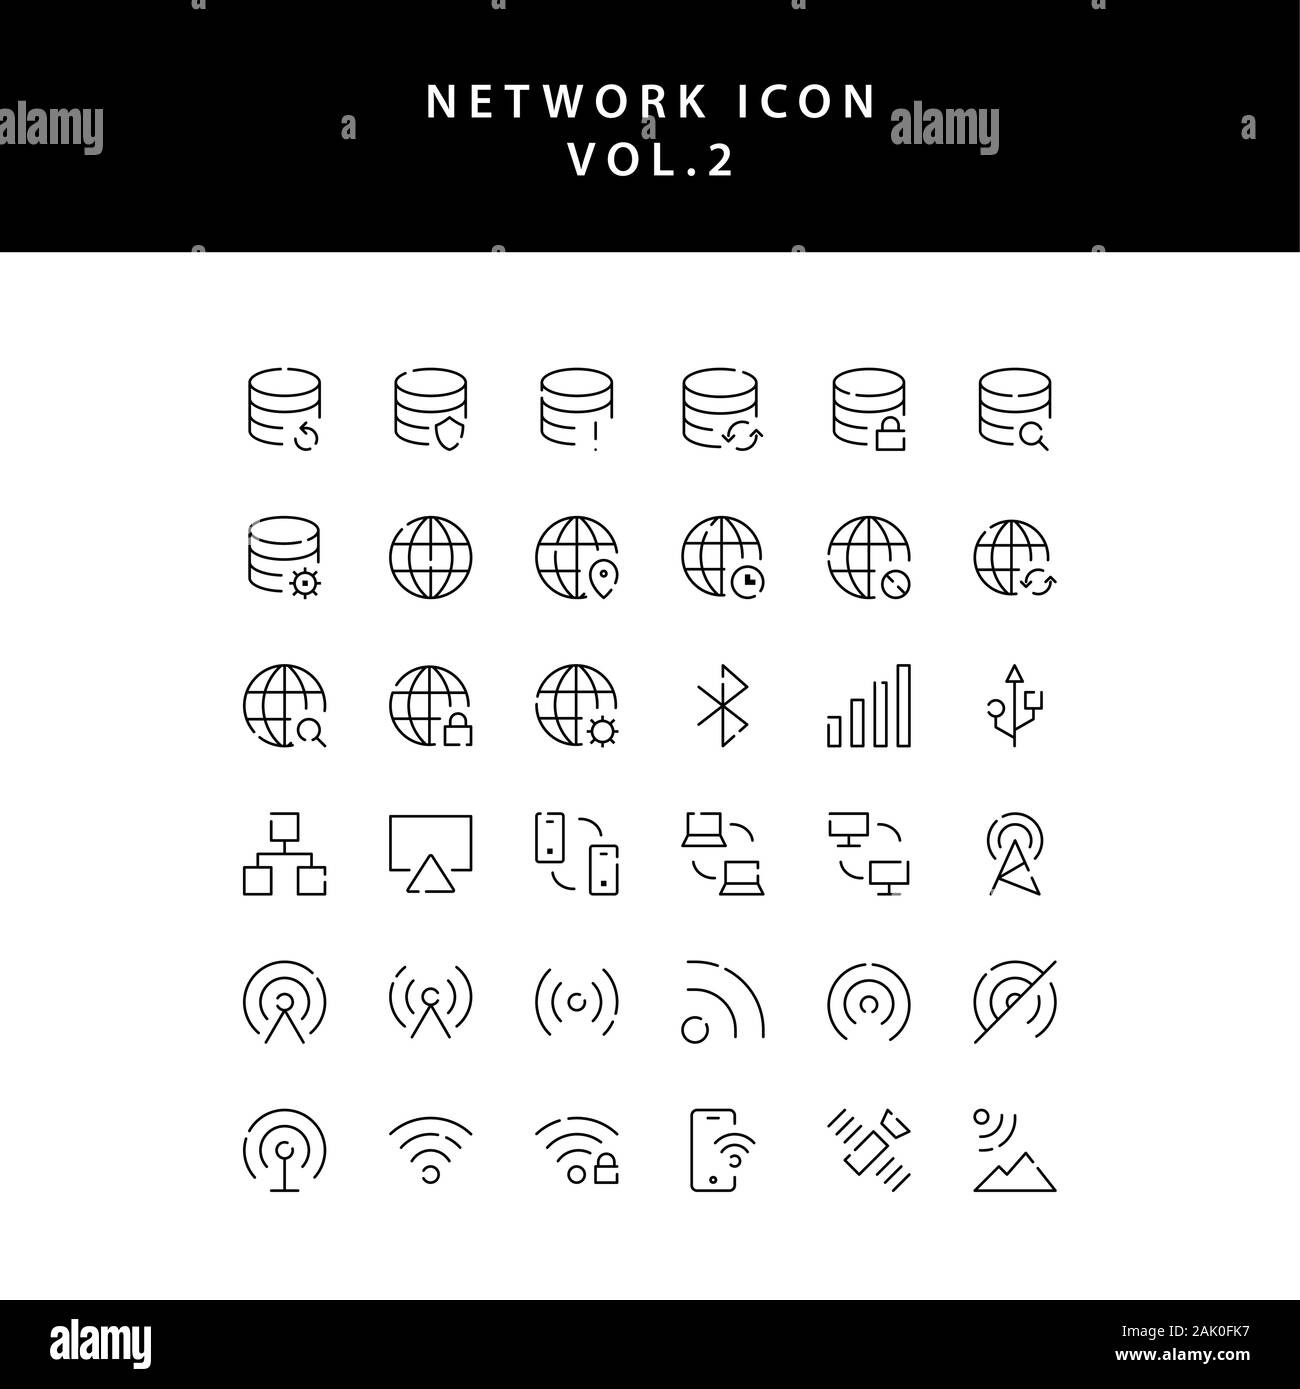 Cloud Computing Netzwerk übersicht Icon Set Vol. 2 Stock Vektor